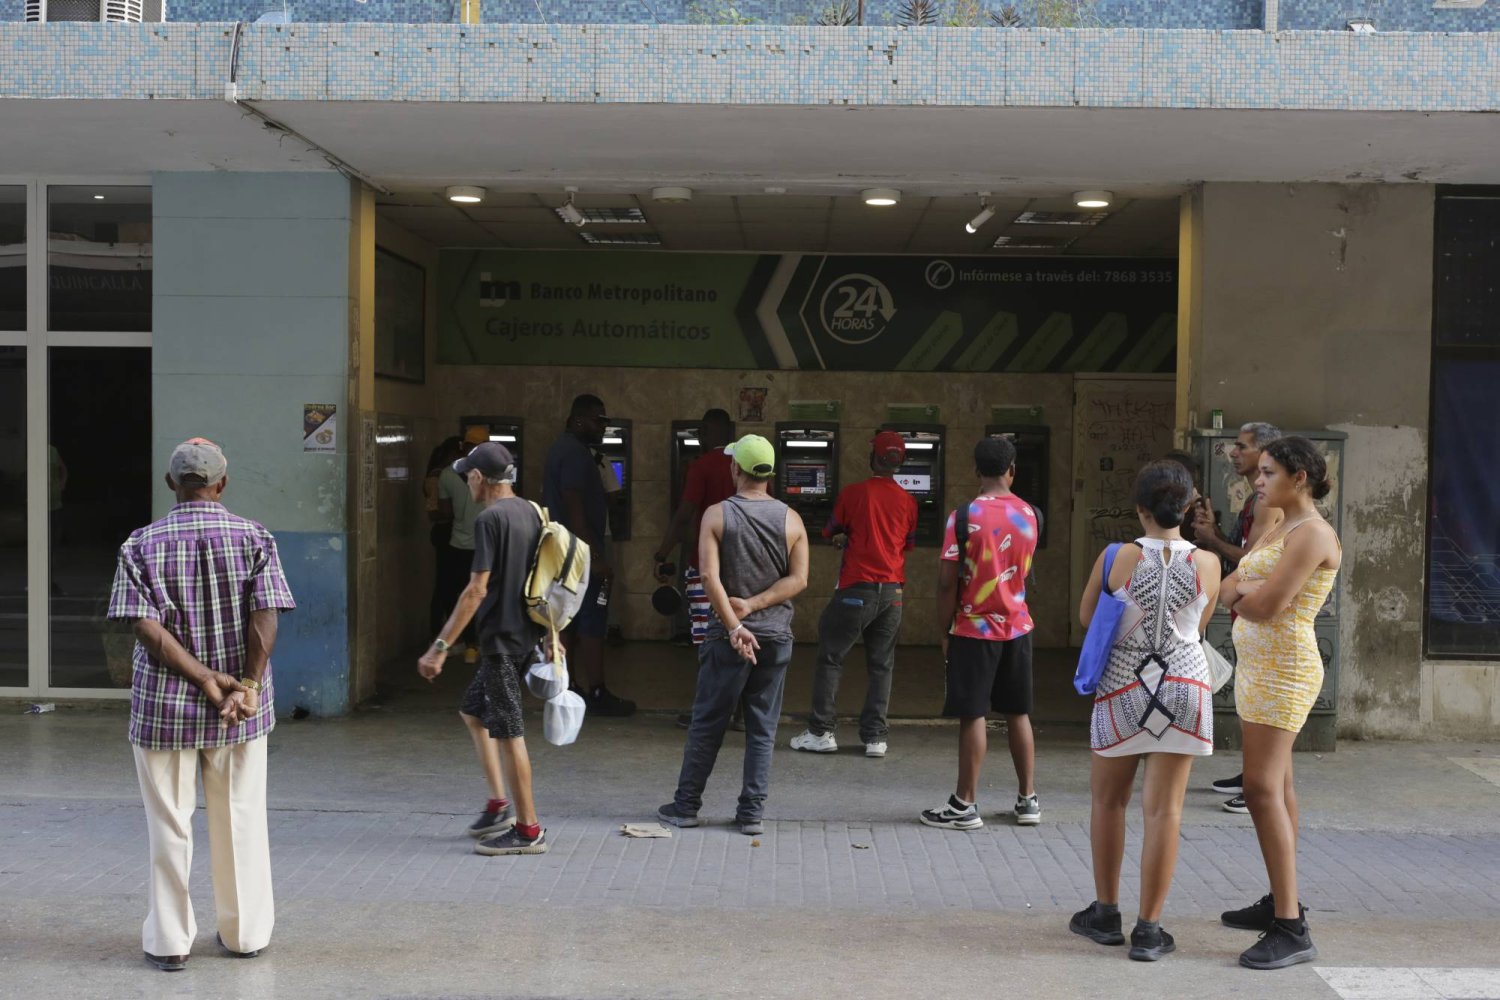 كوبيون ينتظرون أمام آلات صرف النقد الخاصة بأحد المصارف آملين الحصول على بعض المال وسط أزمة نقص في السيولة (أ.ب)